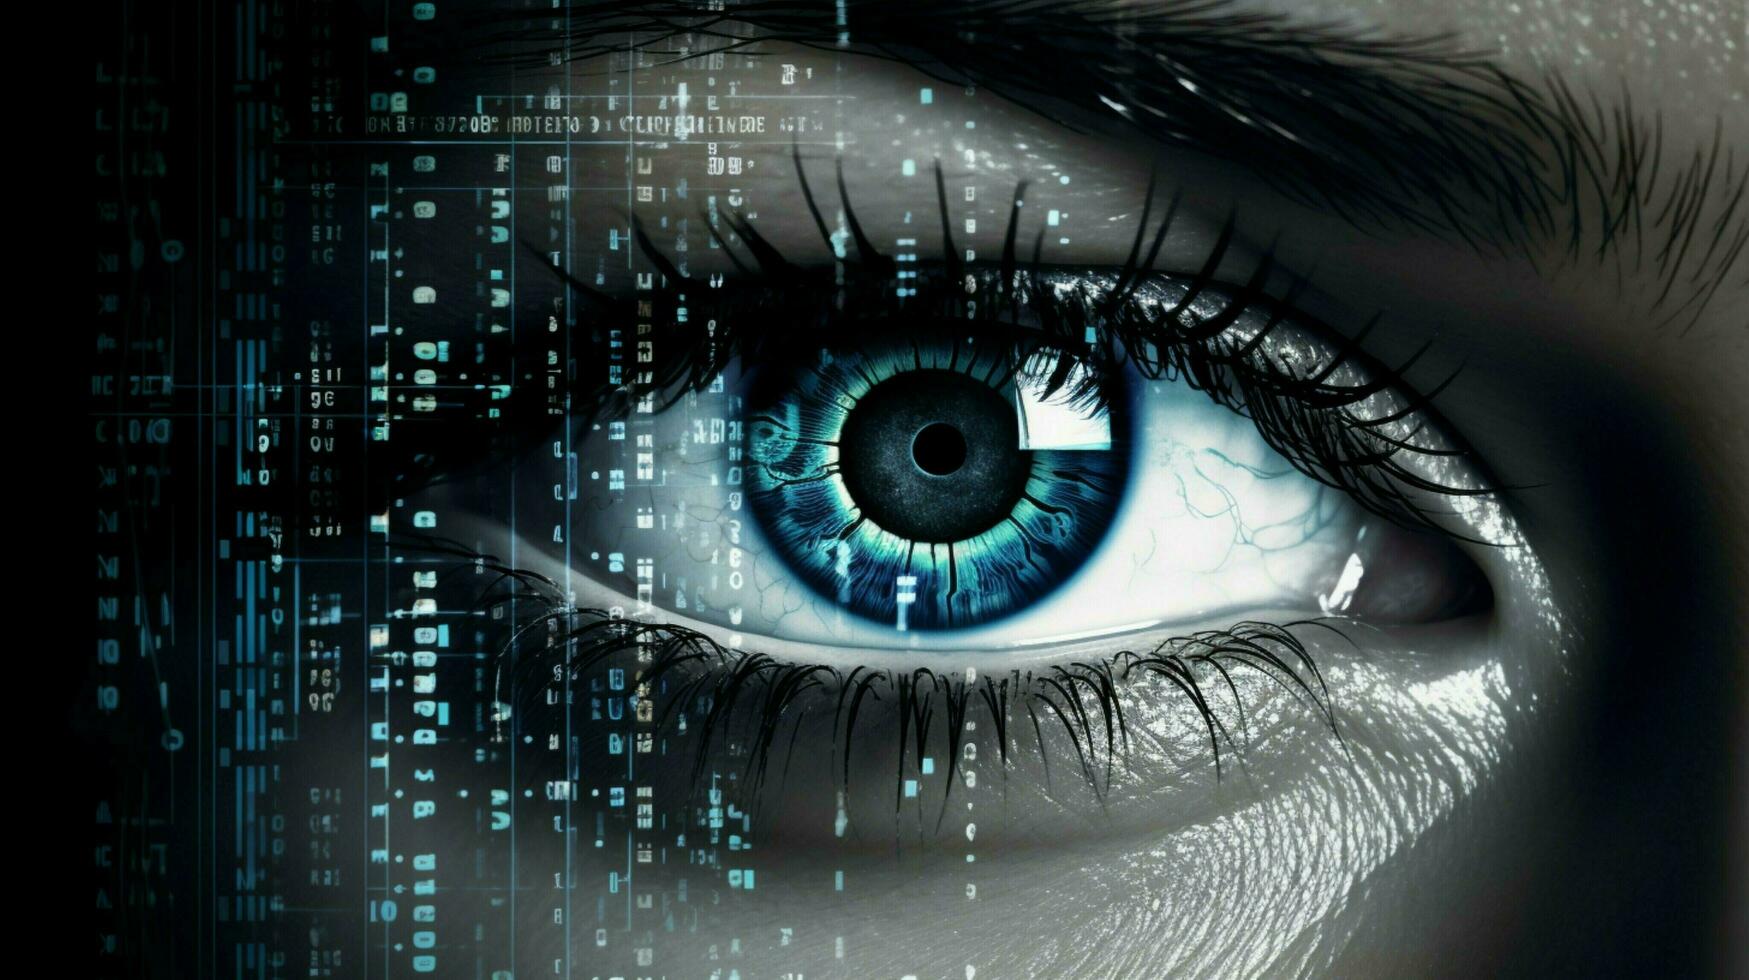 humano olho assistindo futurista segurança sistema dados foto